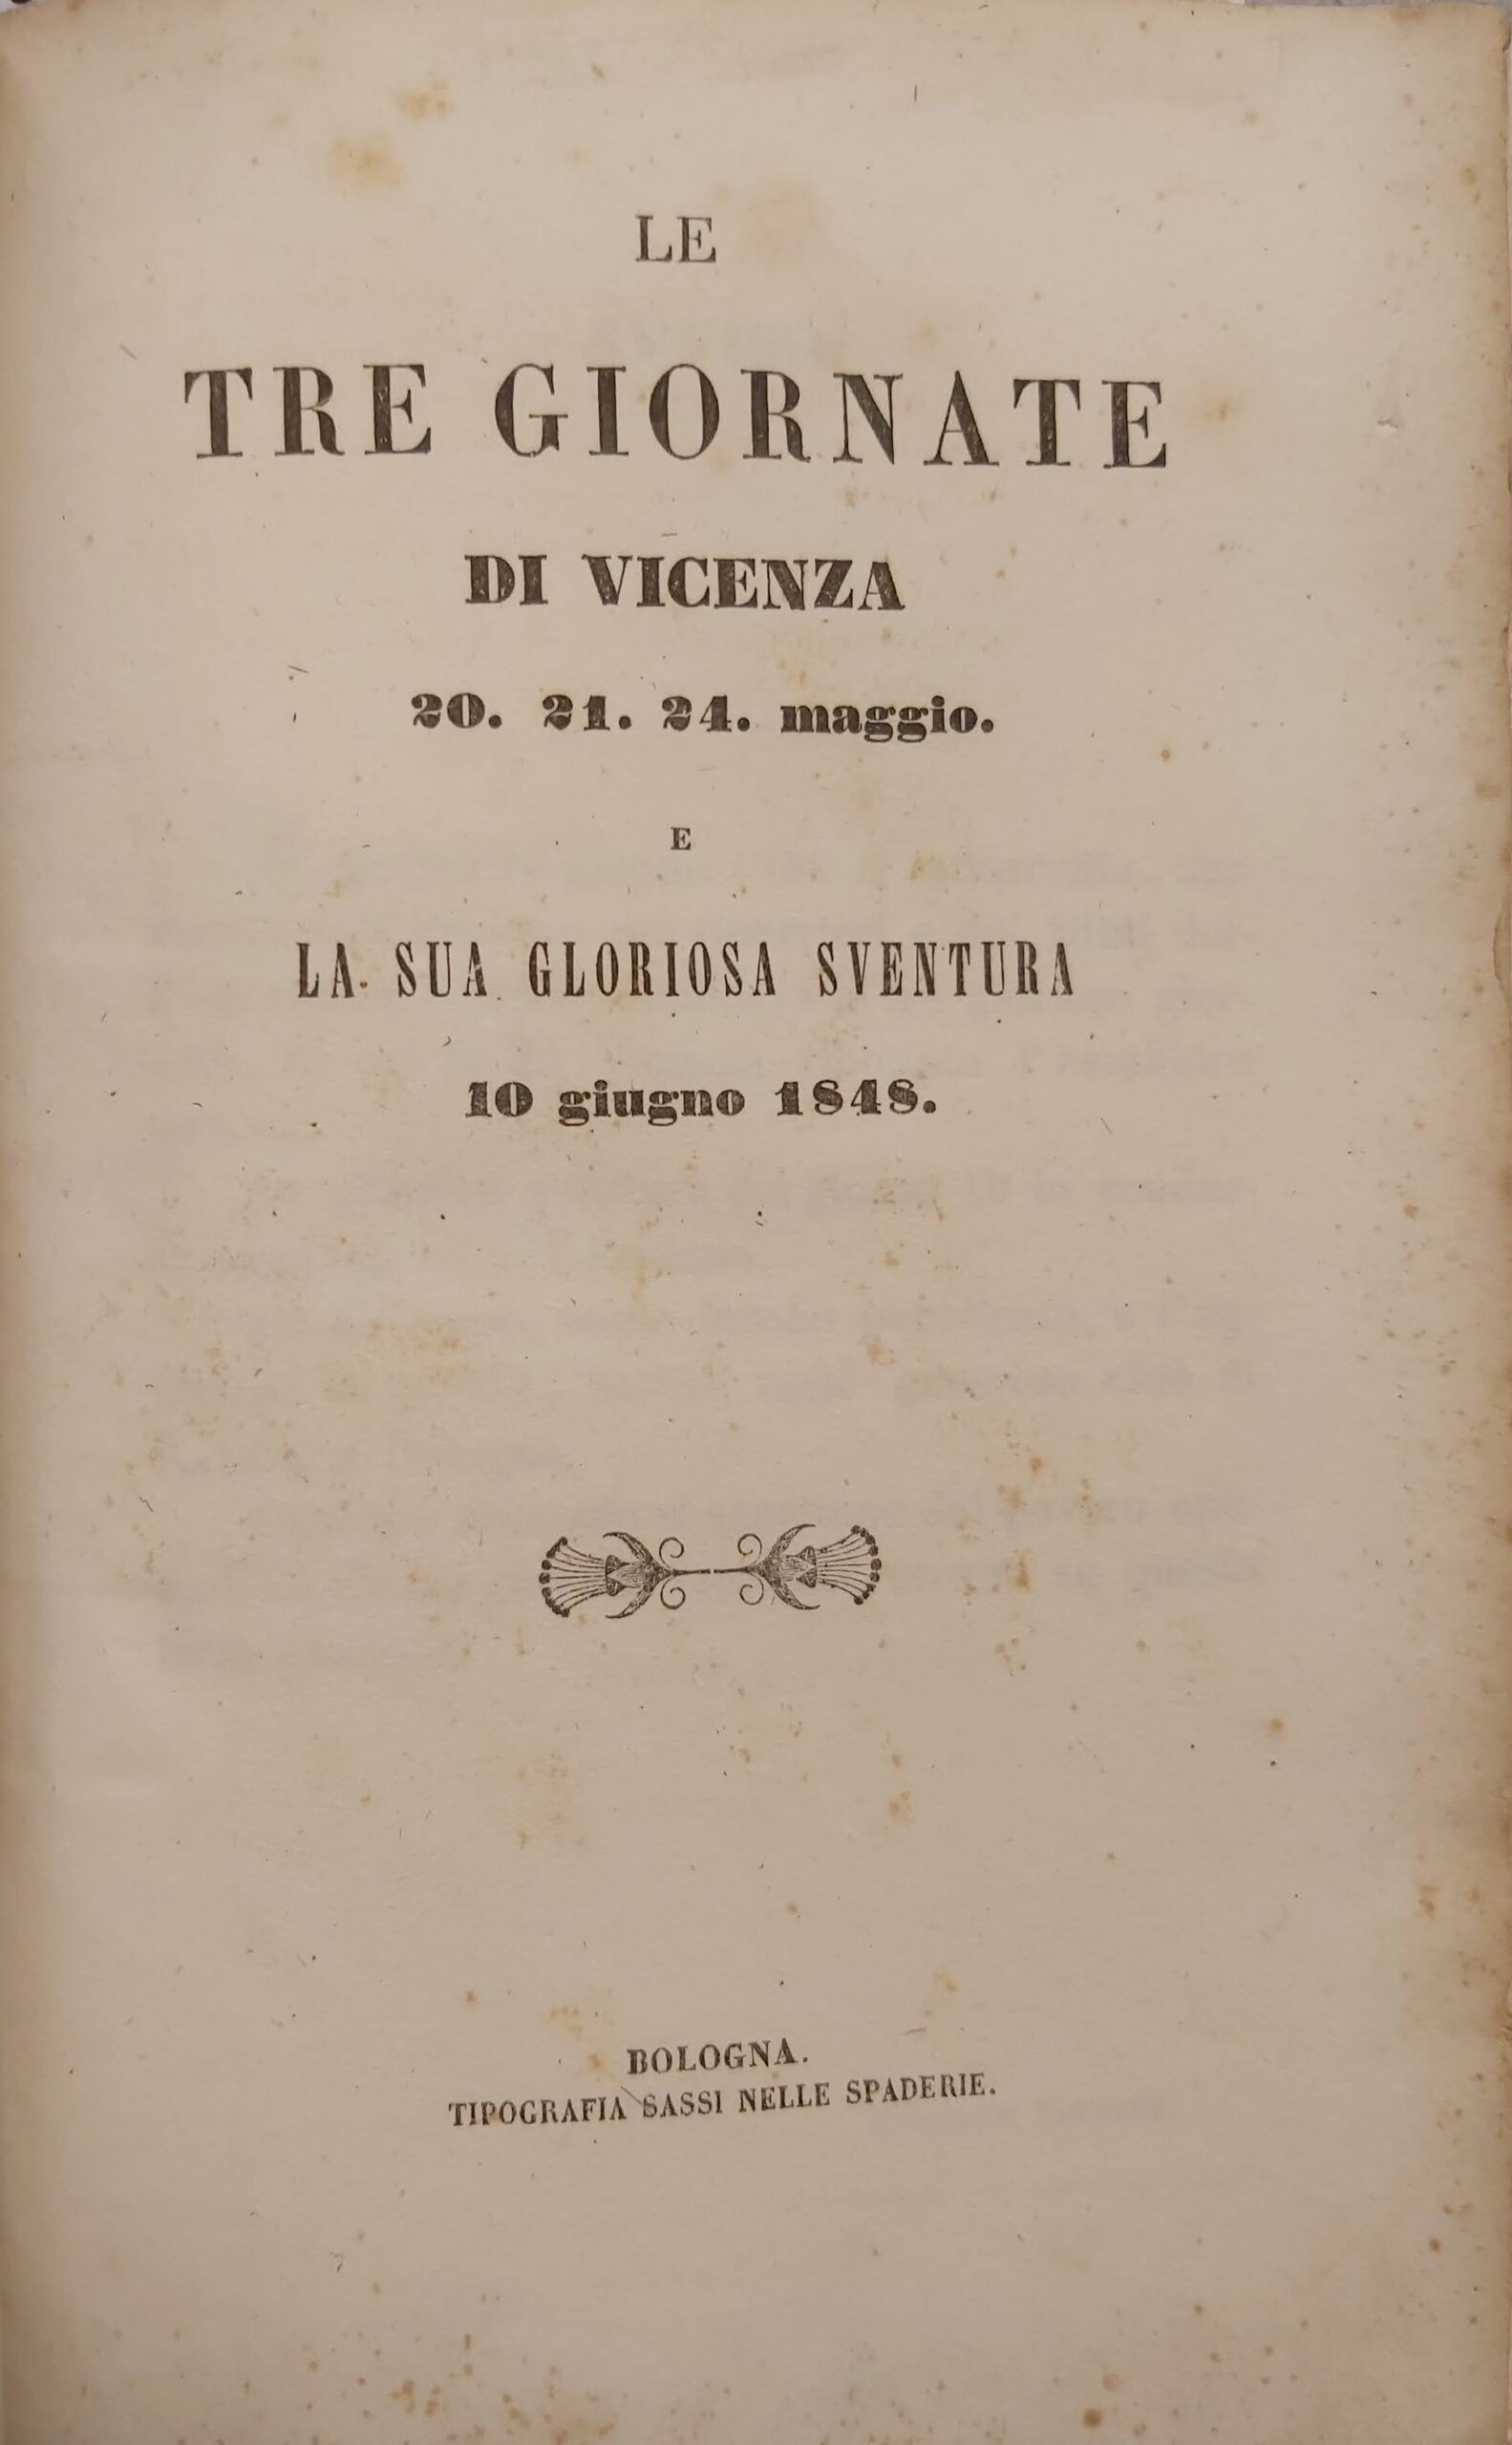 LOC17-322 Stefani Vicenza